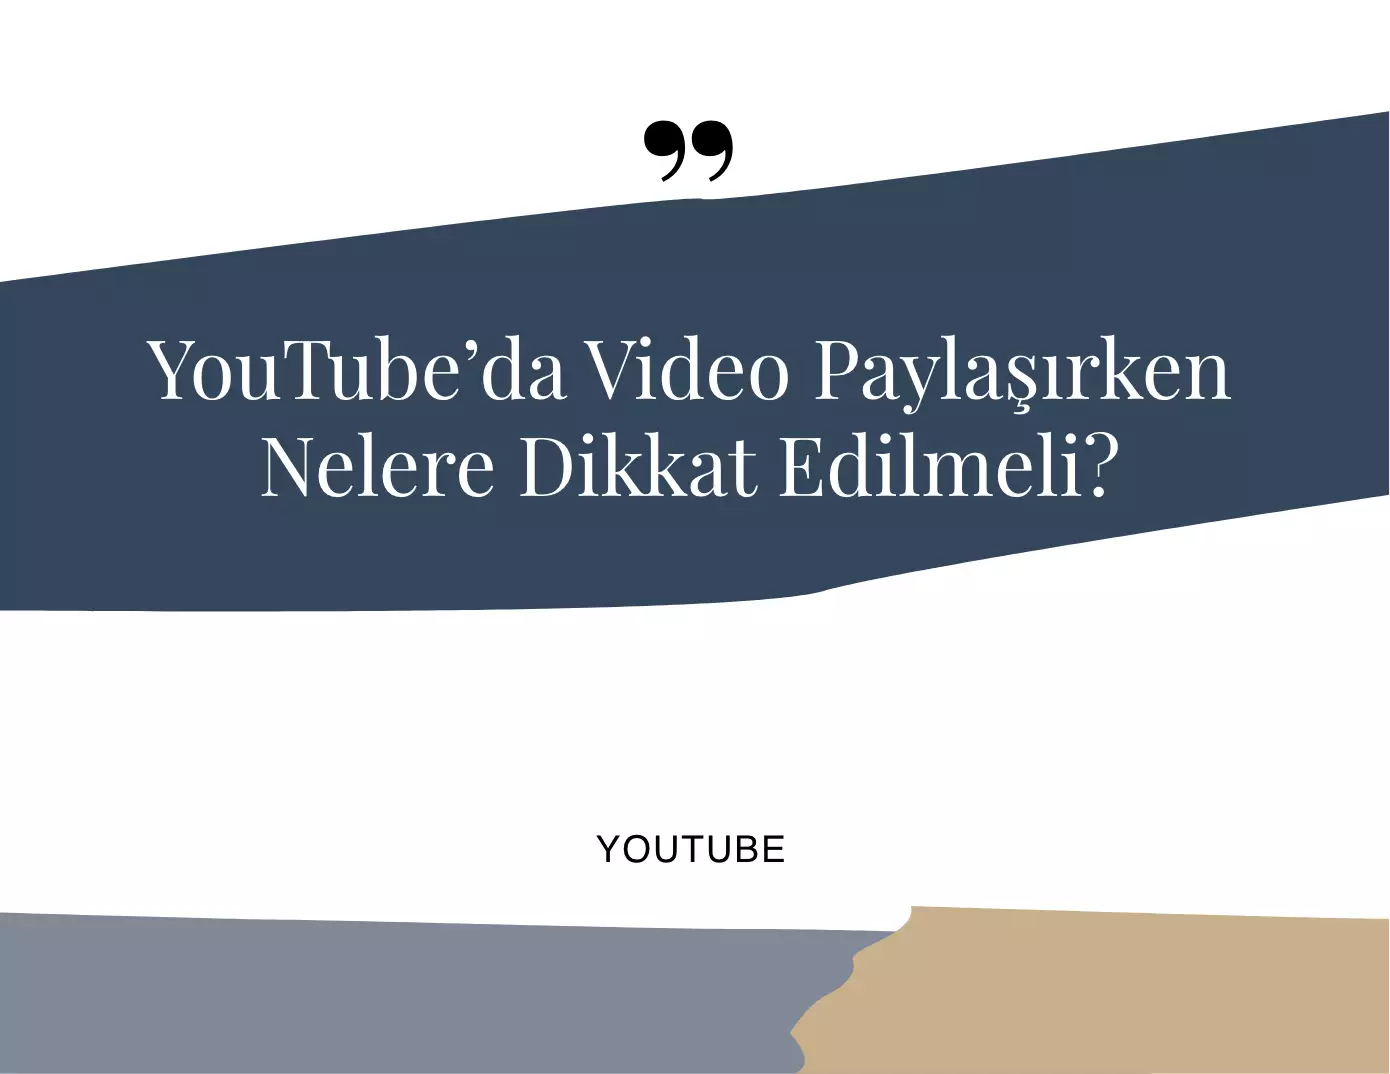 YouTube’da Video Paylaşırken Nelere Dikkat Edilmeli?